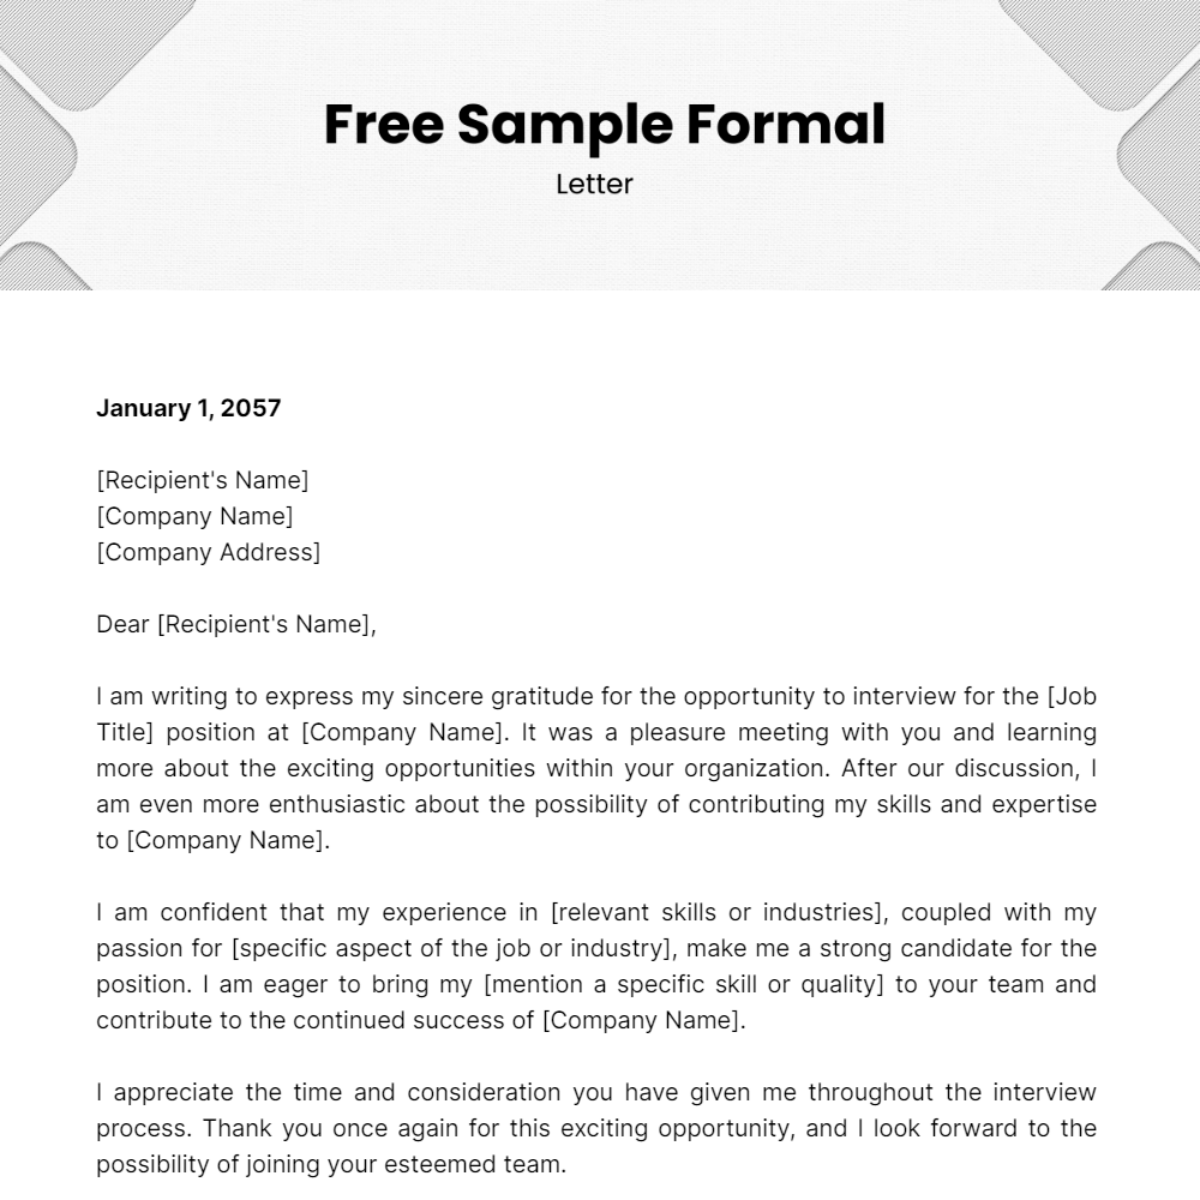 Sample Formal Letter Template